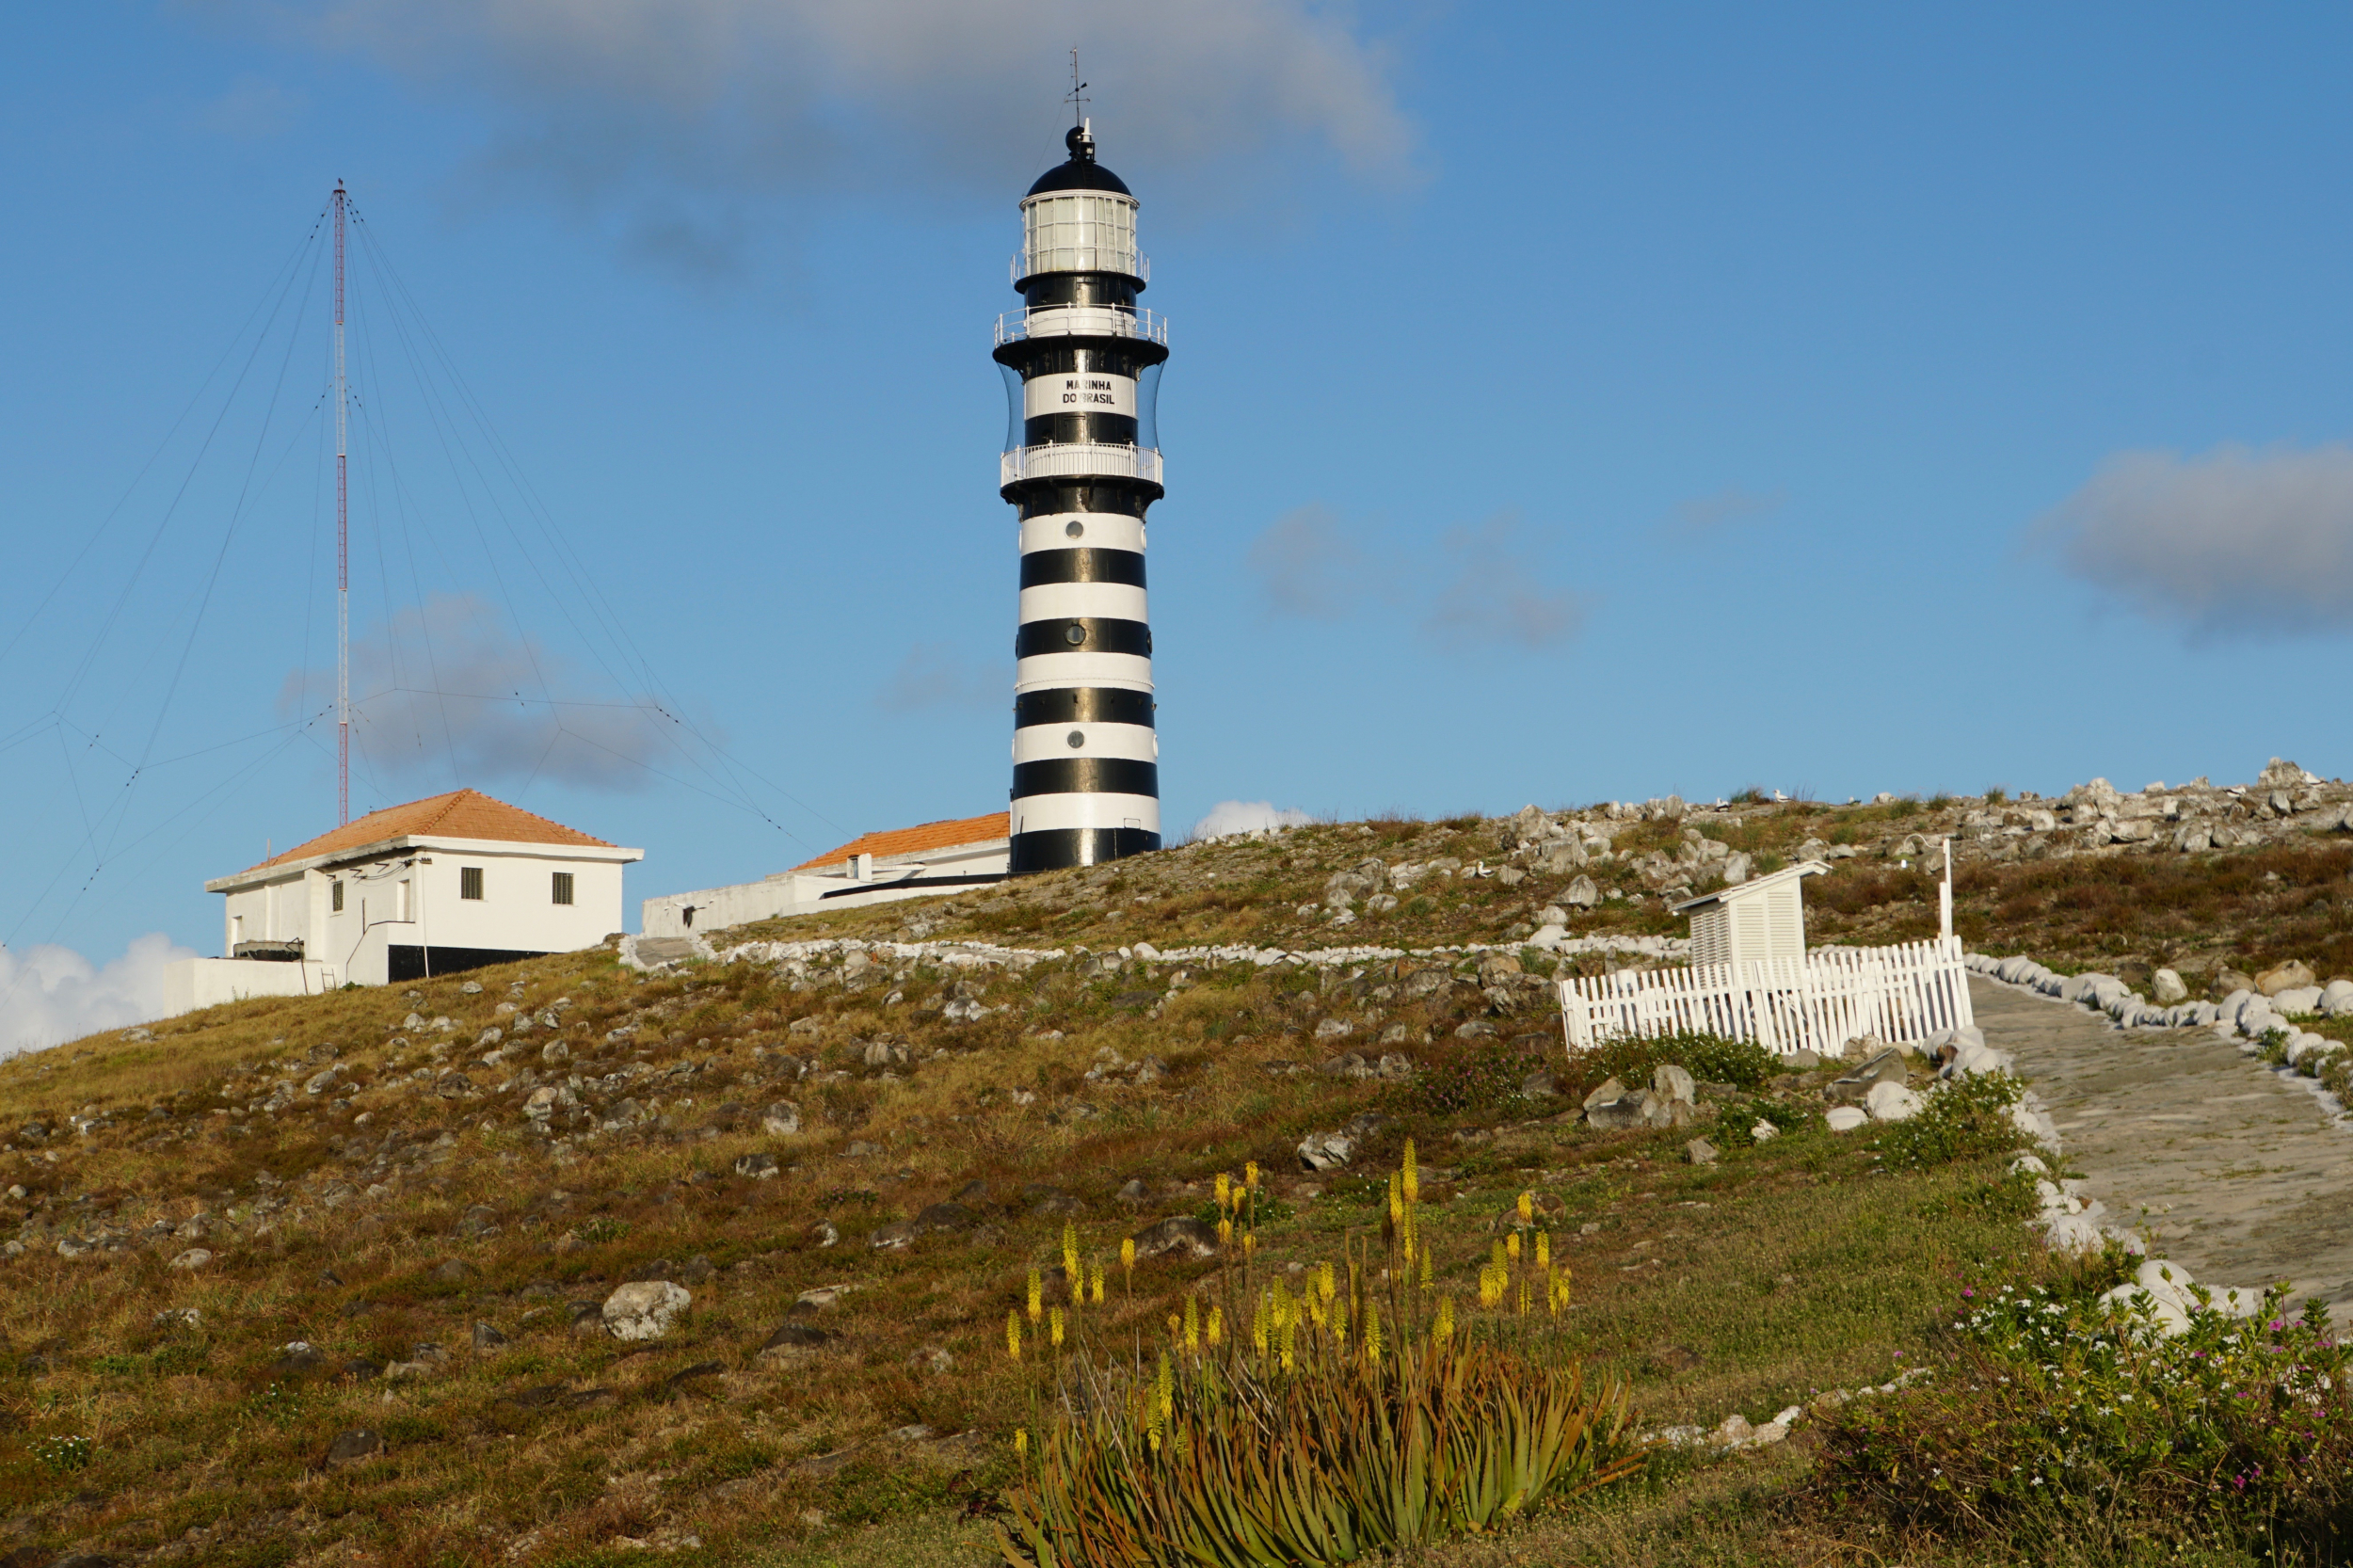 56. Albrolhos lighthouse